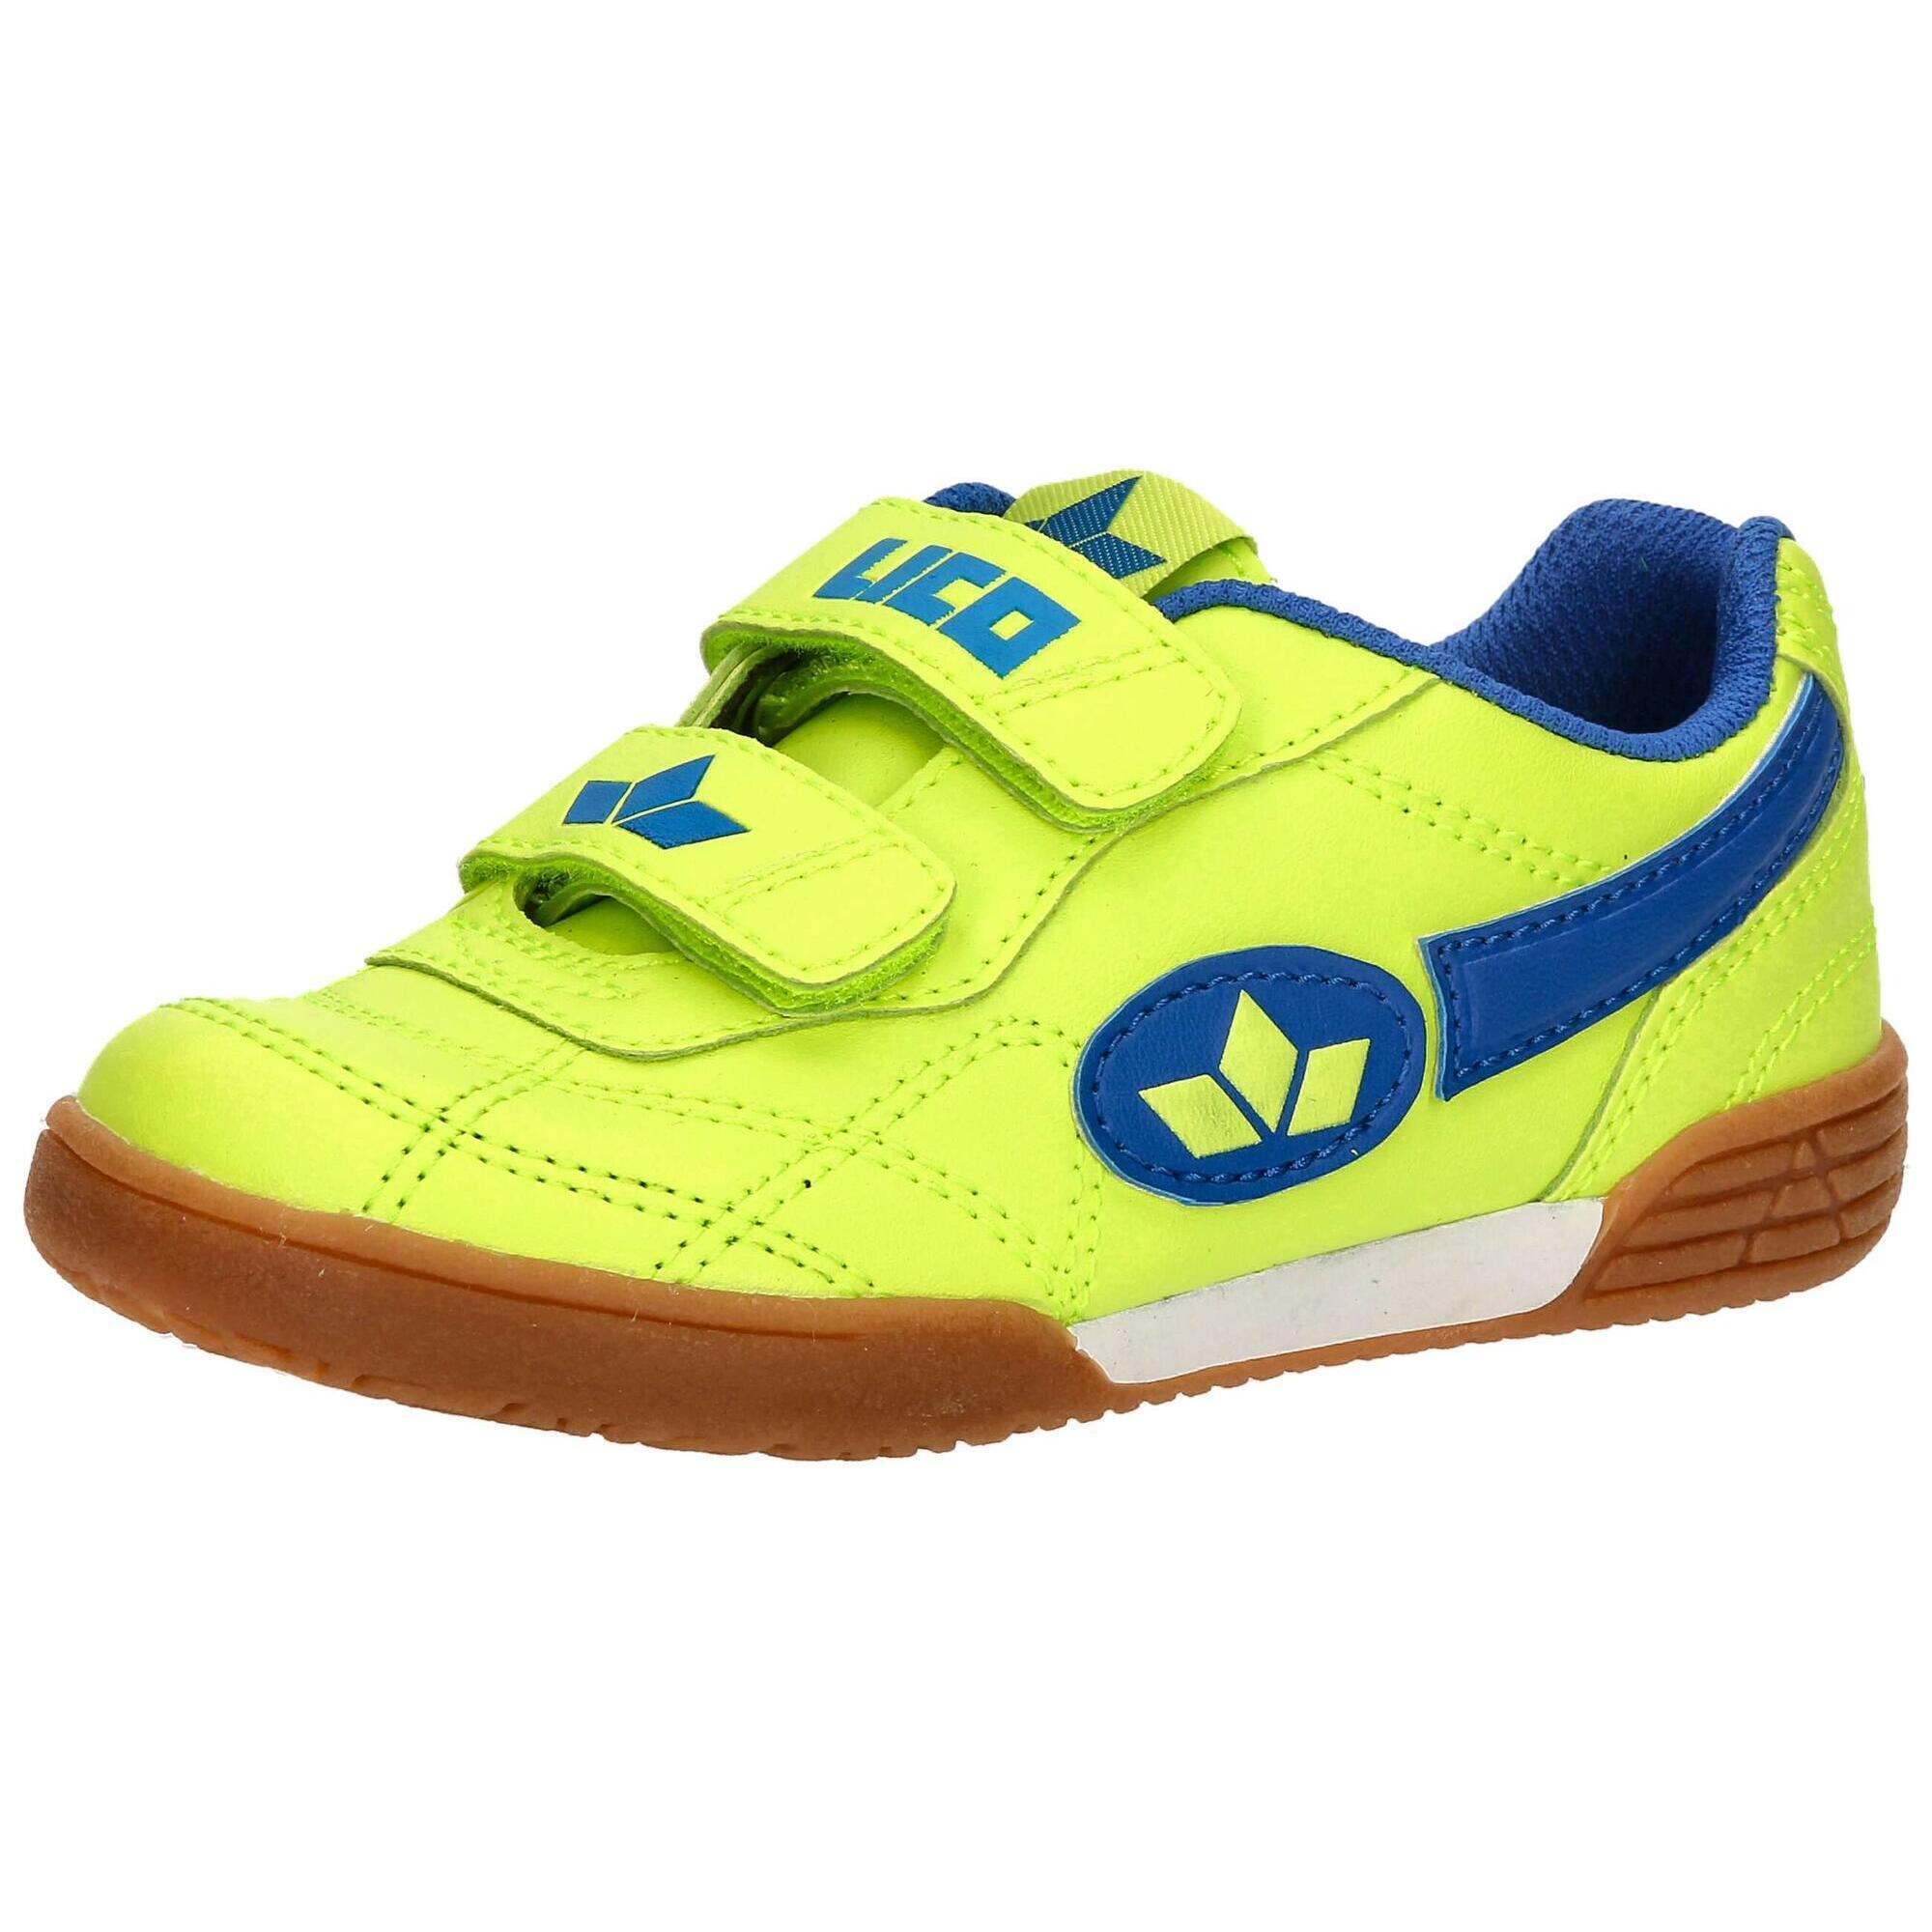 Обувь на липучке желтая спортивная обувь для мальчиков Bernie V LICO, желтый